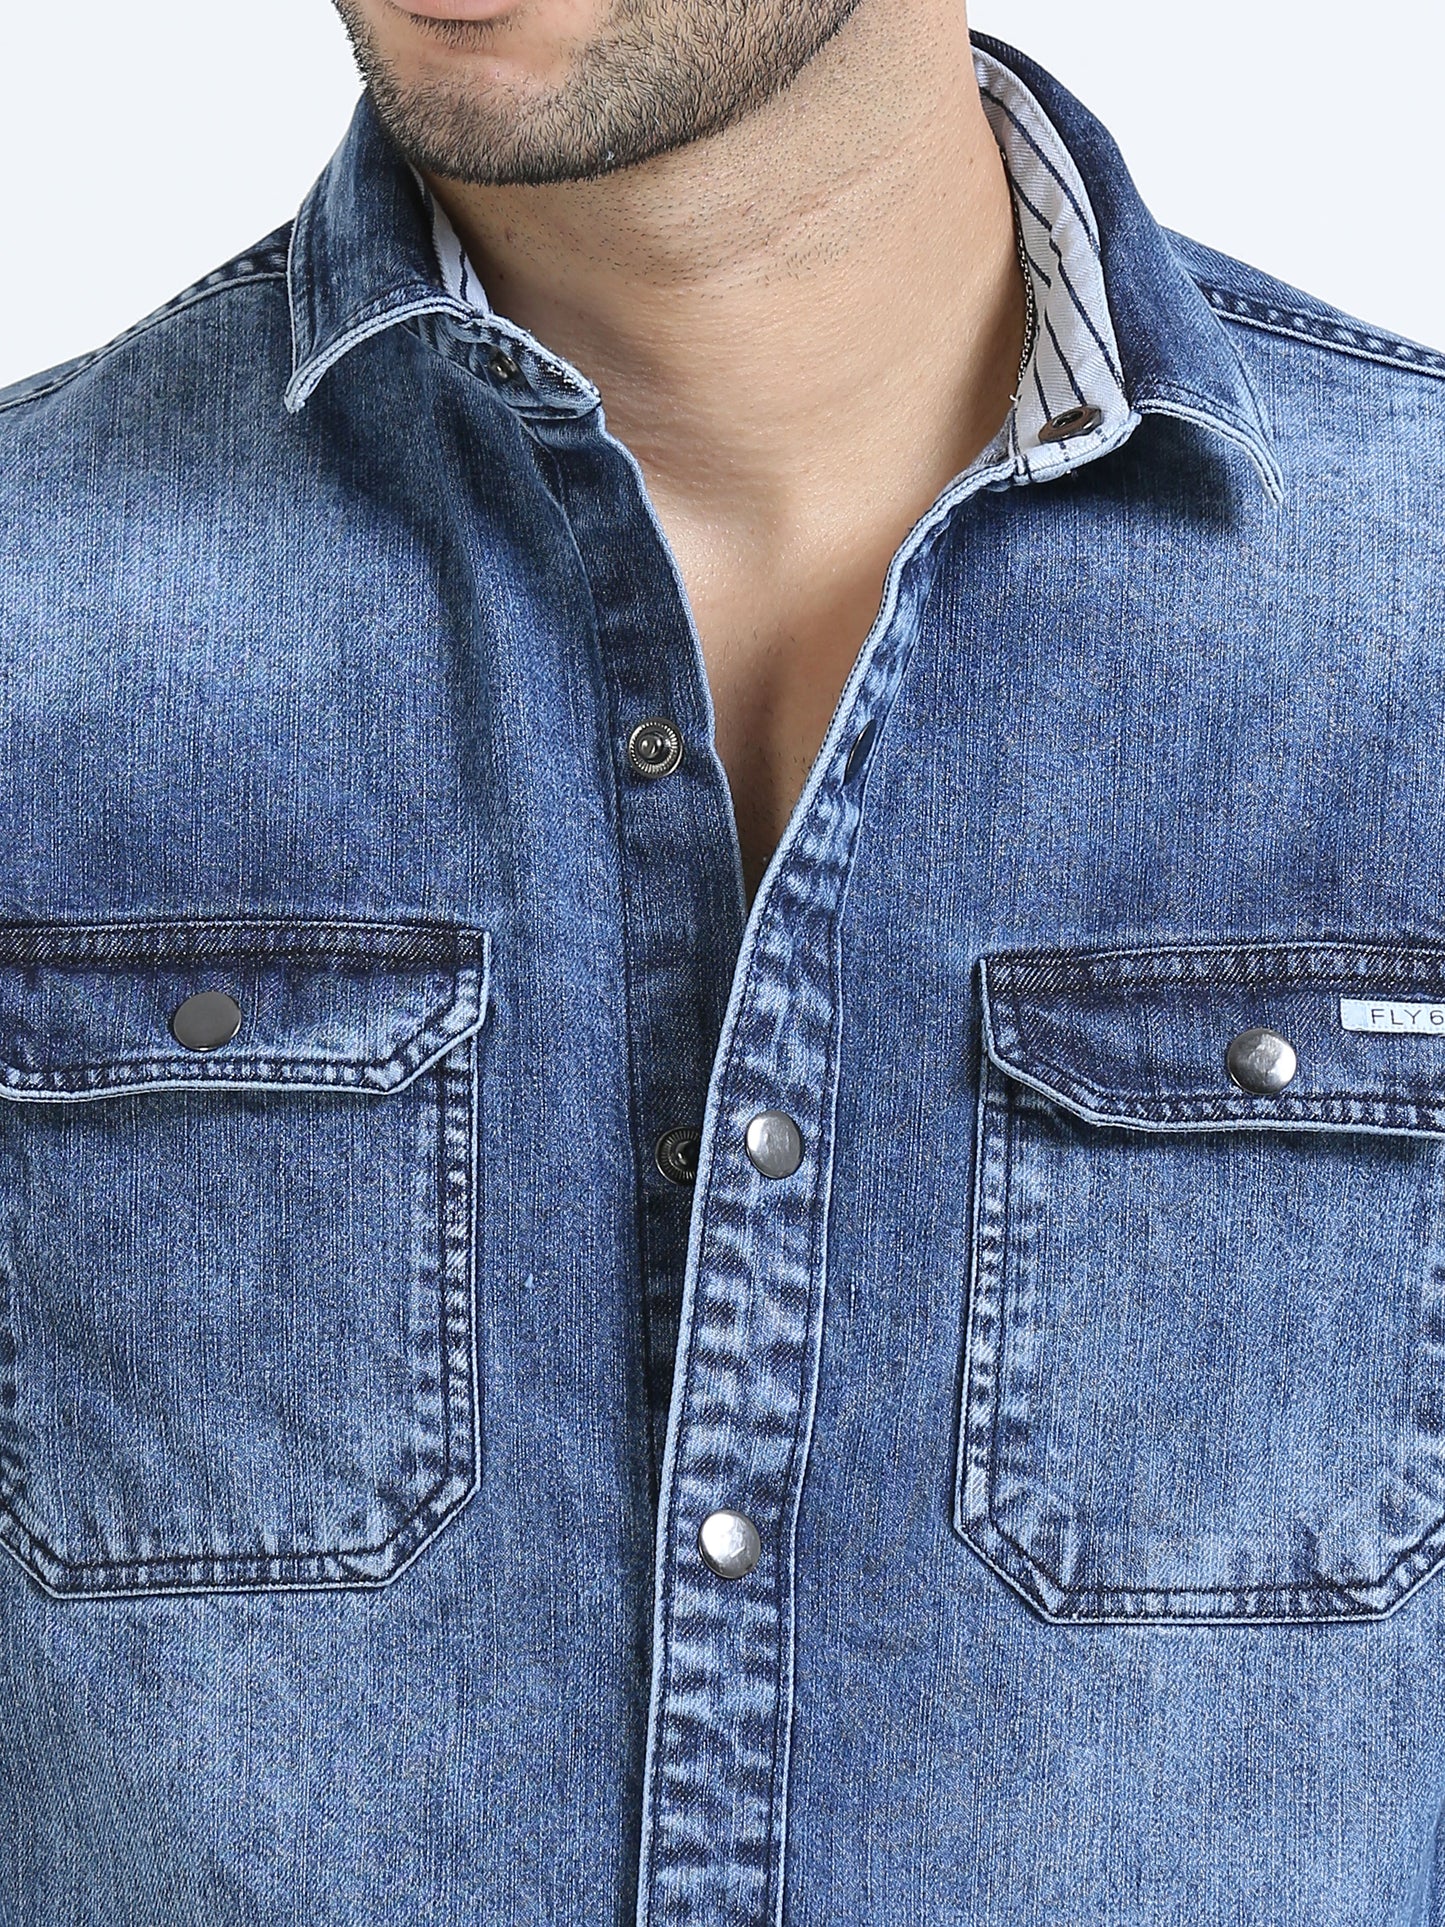 Wedgewood double pocket stylish denim shirts for men